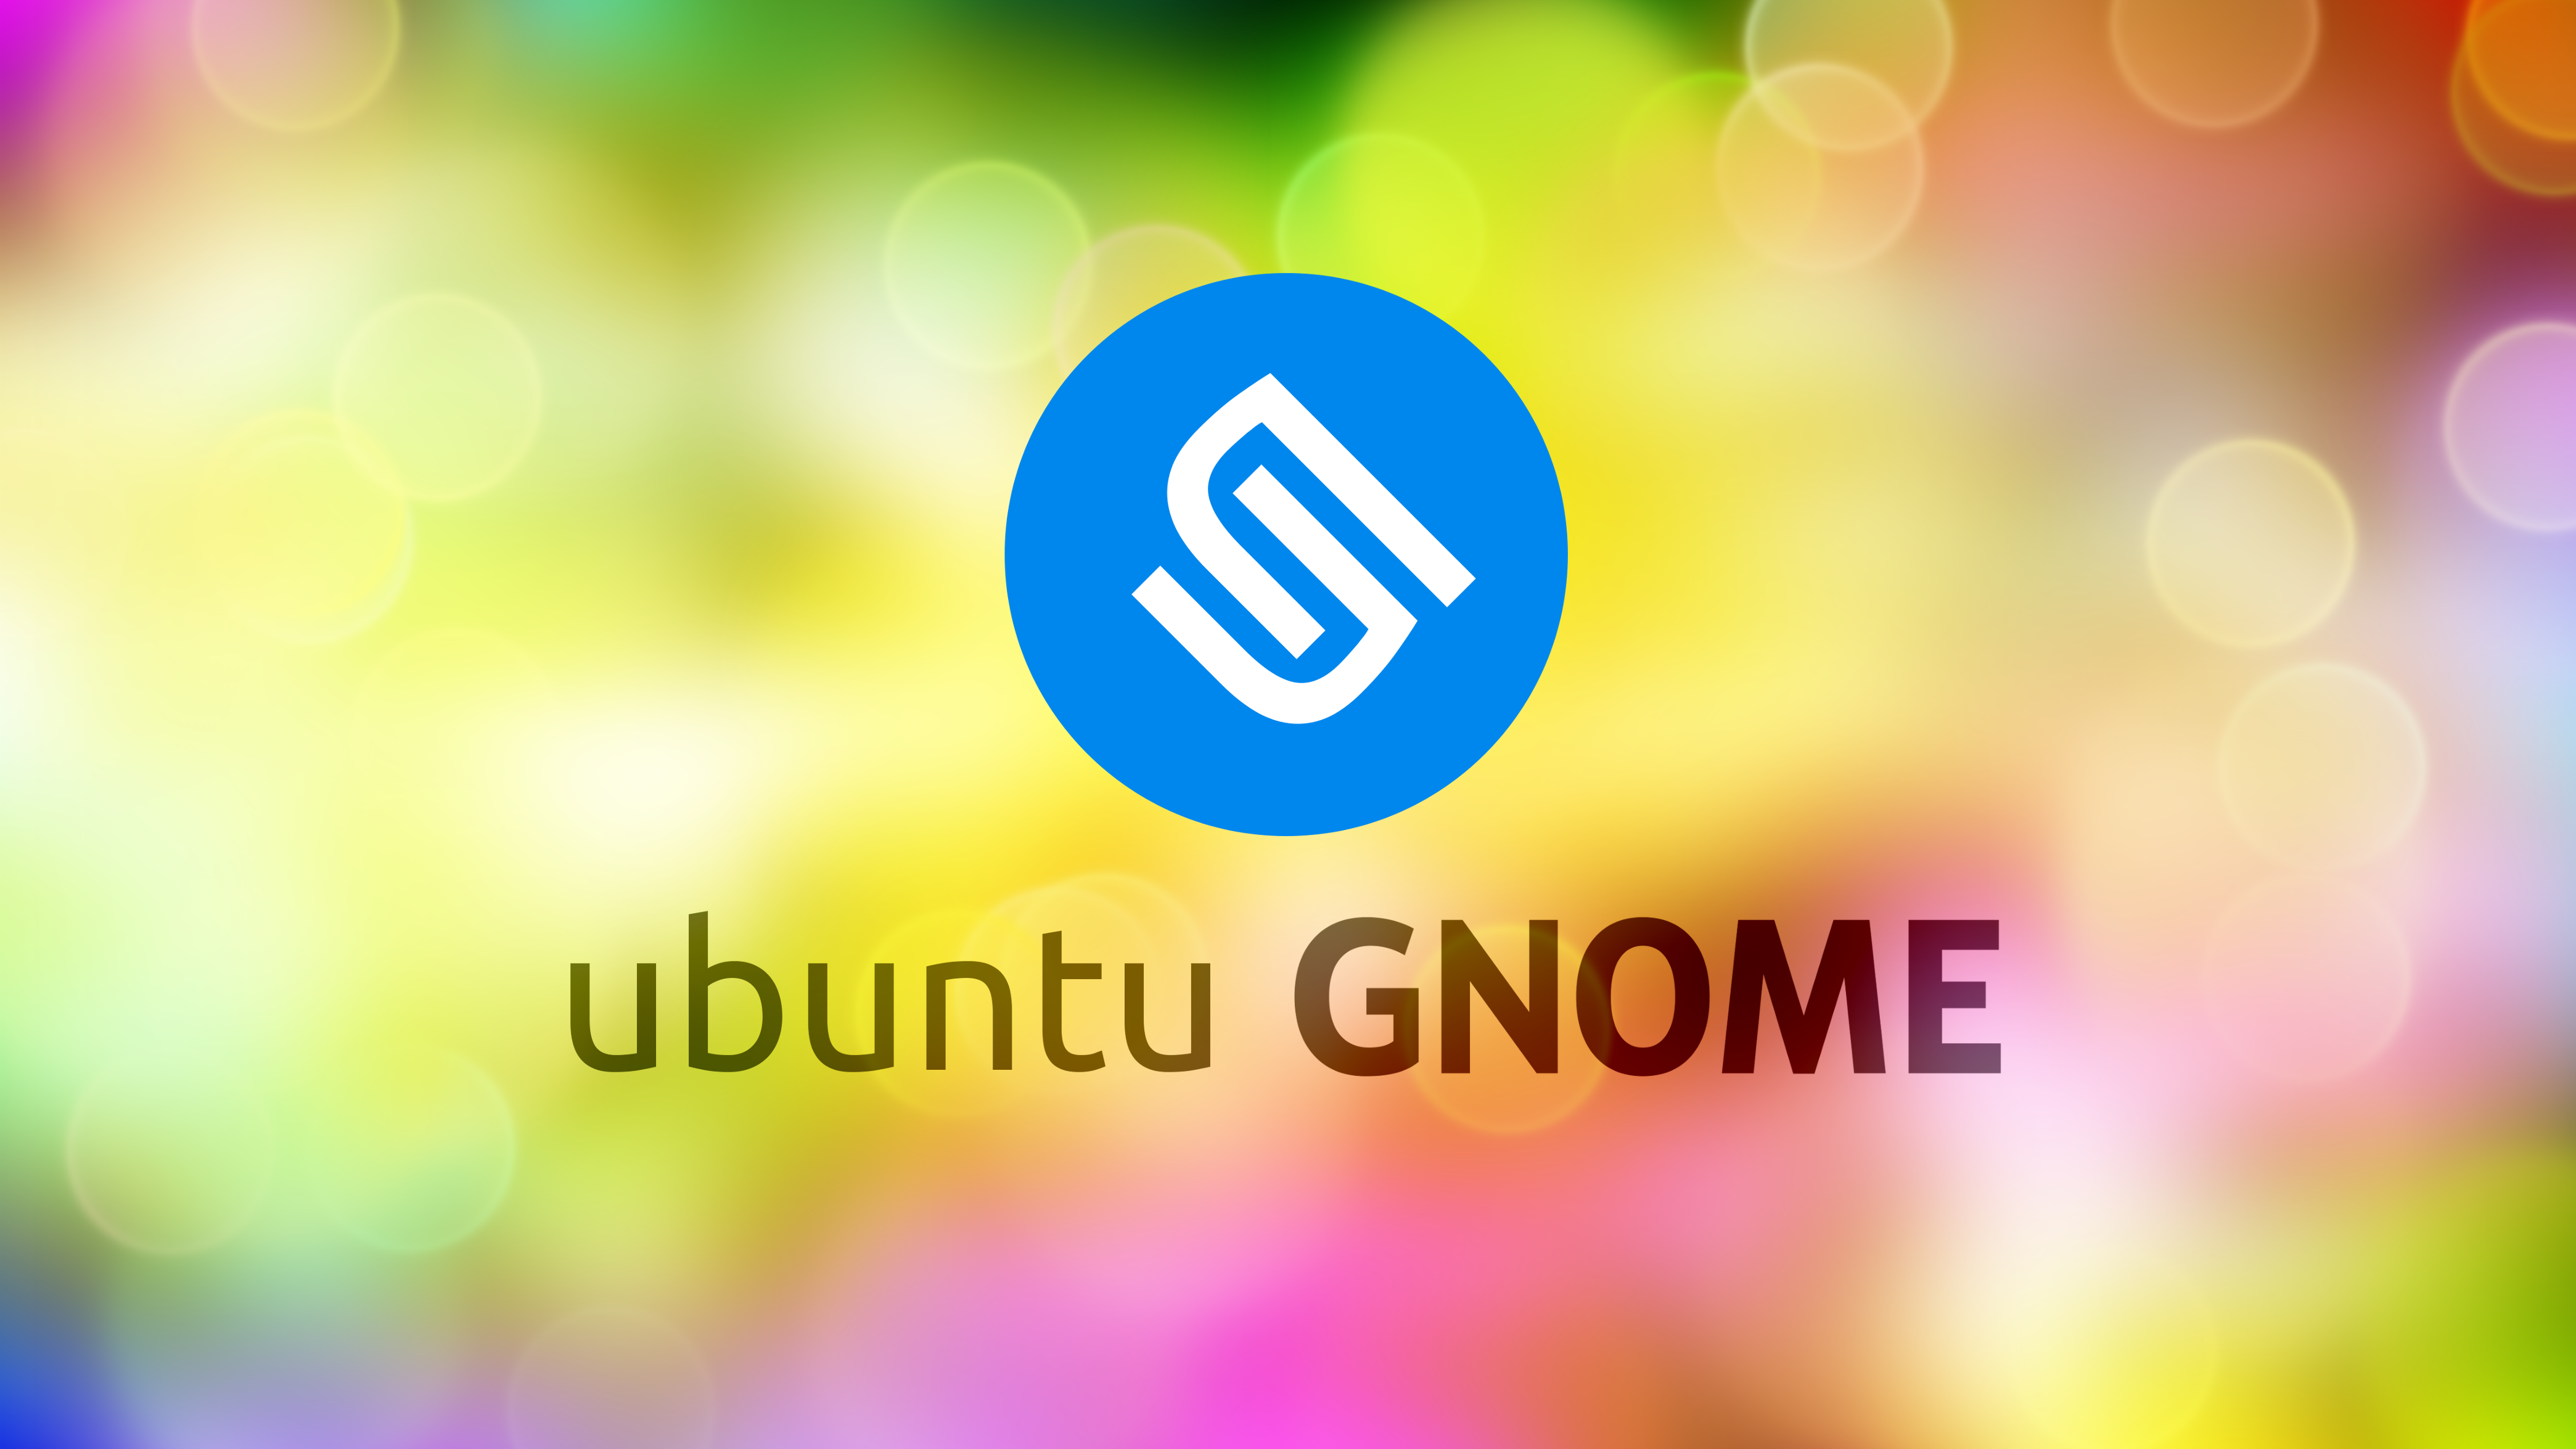 Ubuntu Gnome - HD Wallpaper 